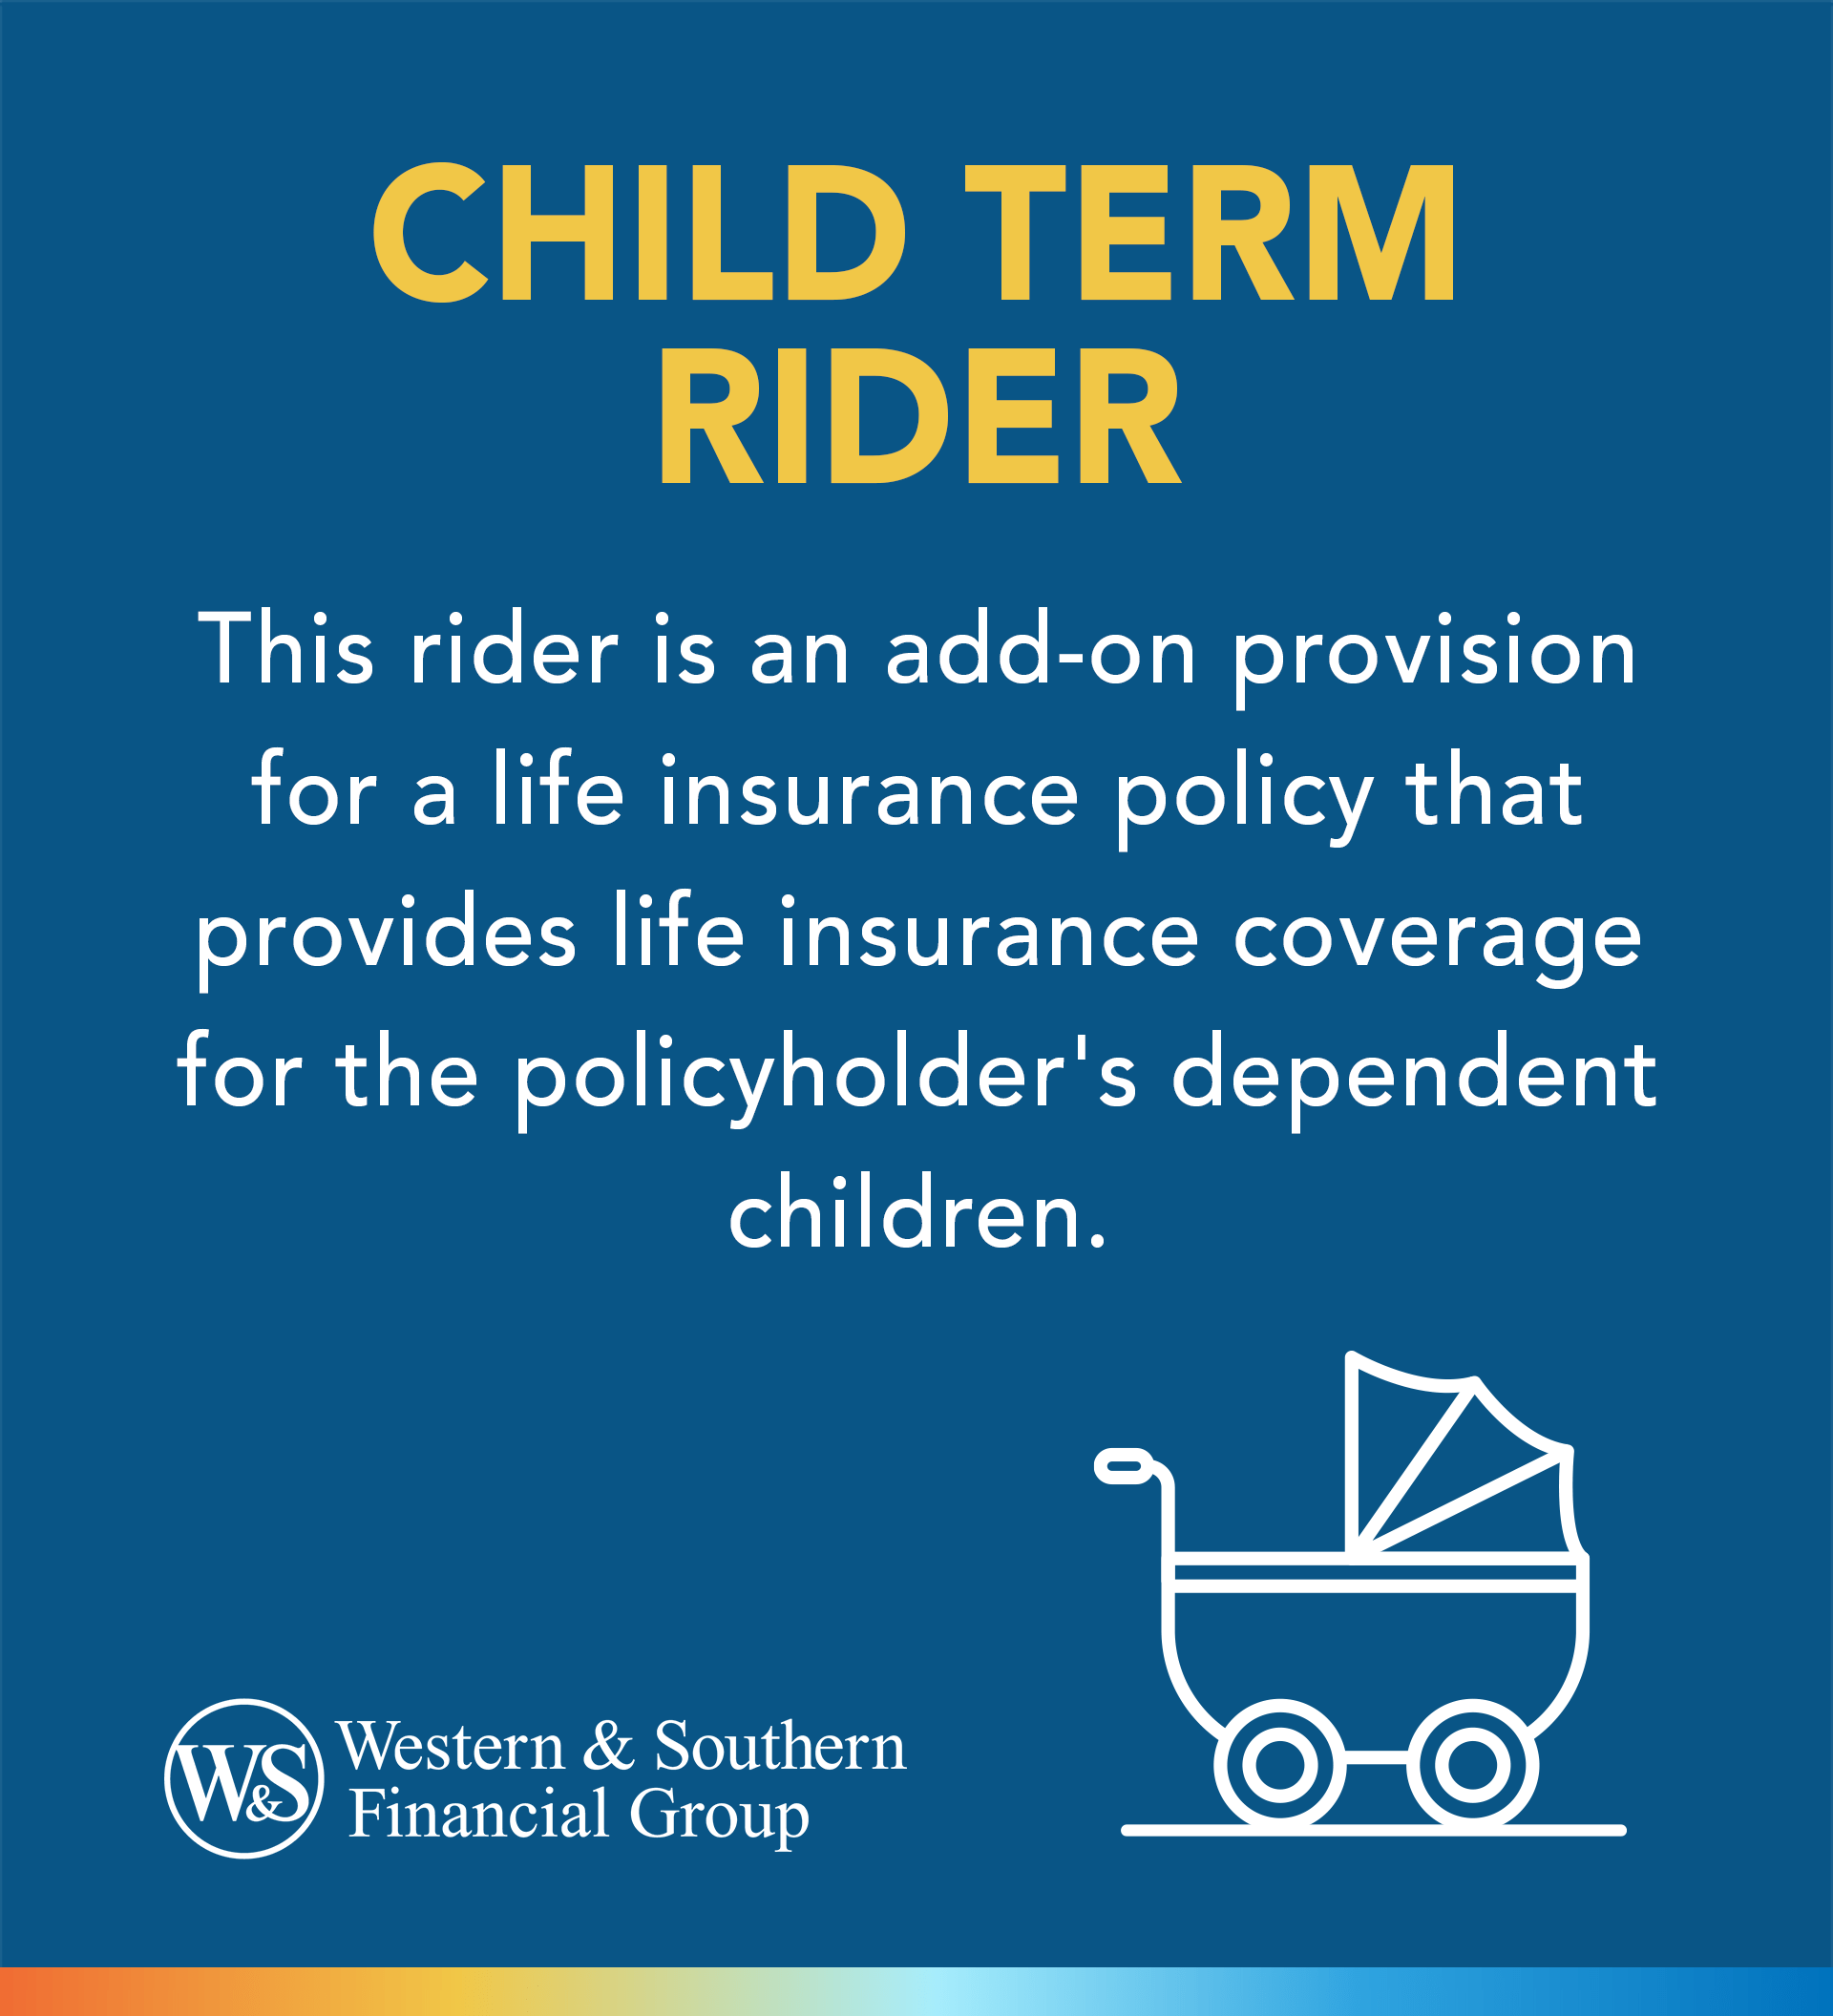 Child Term Rider Definition